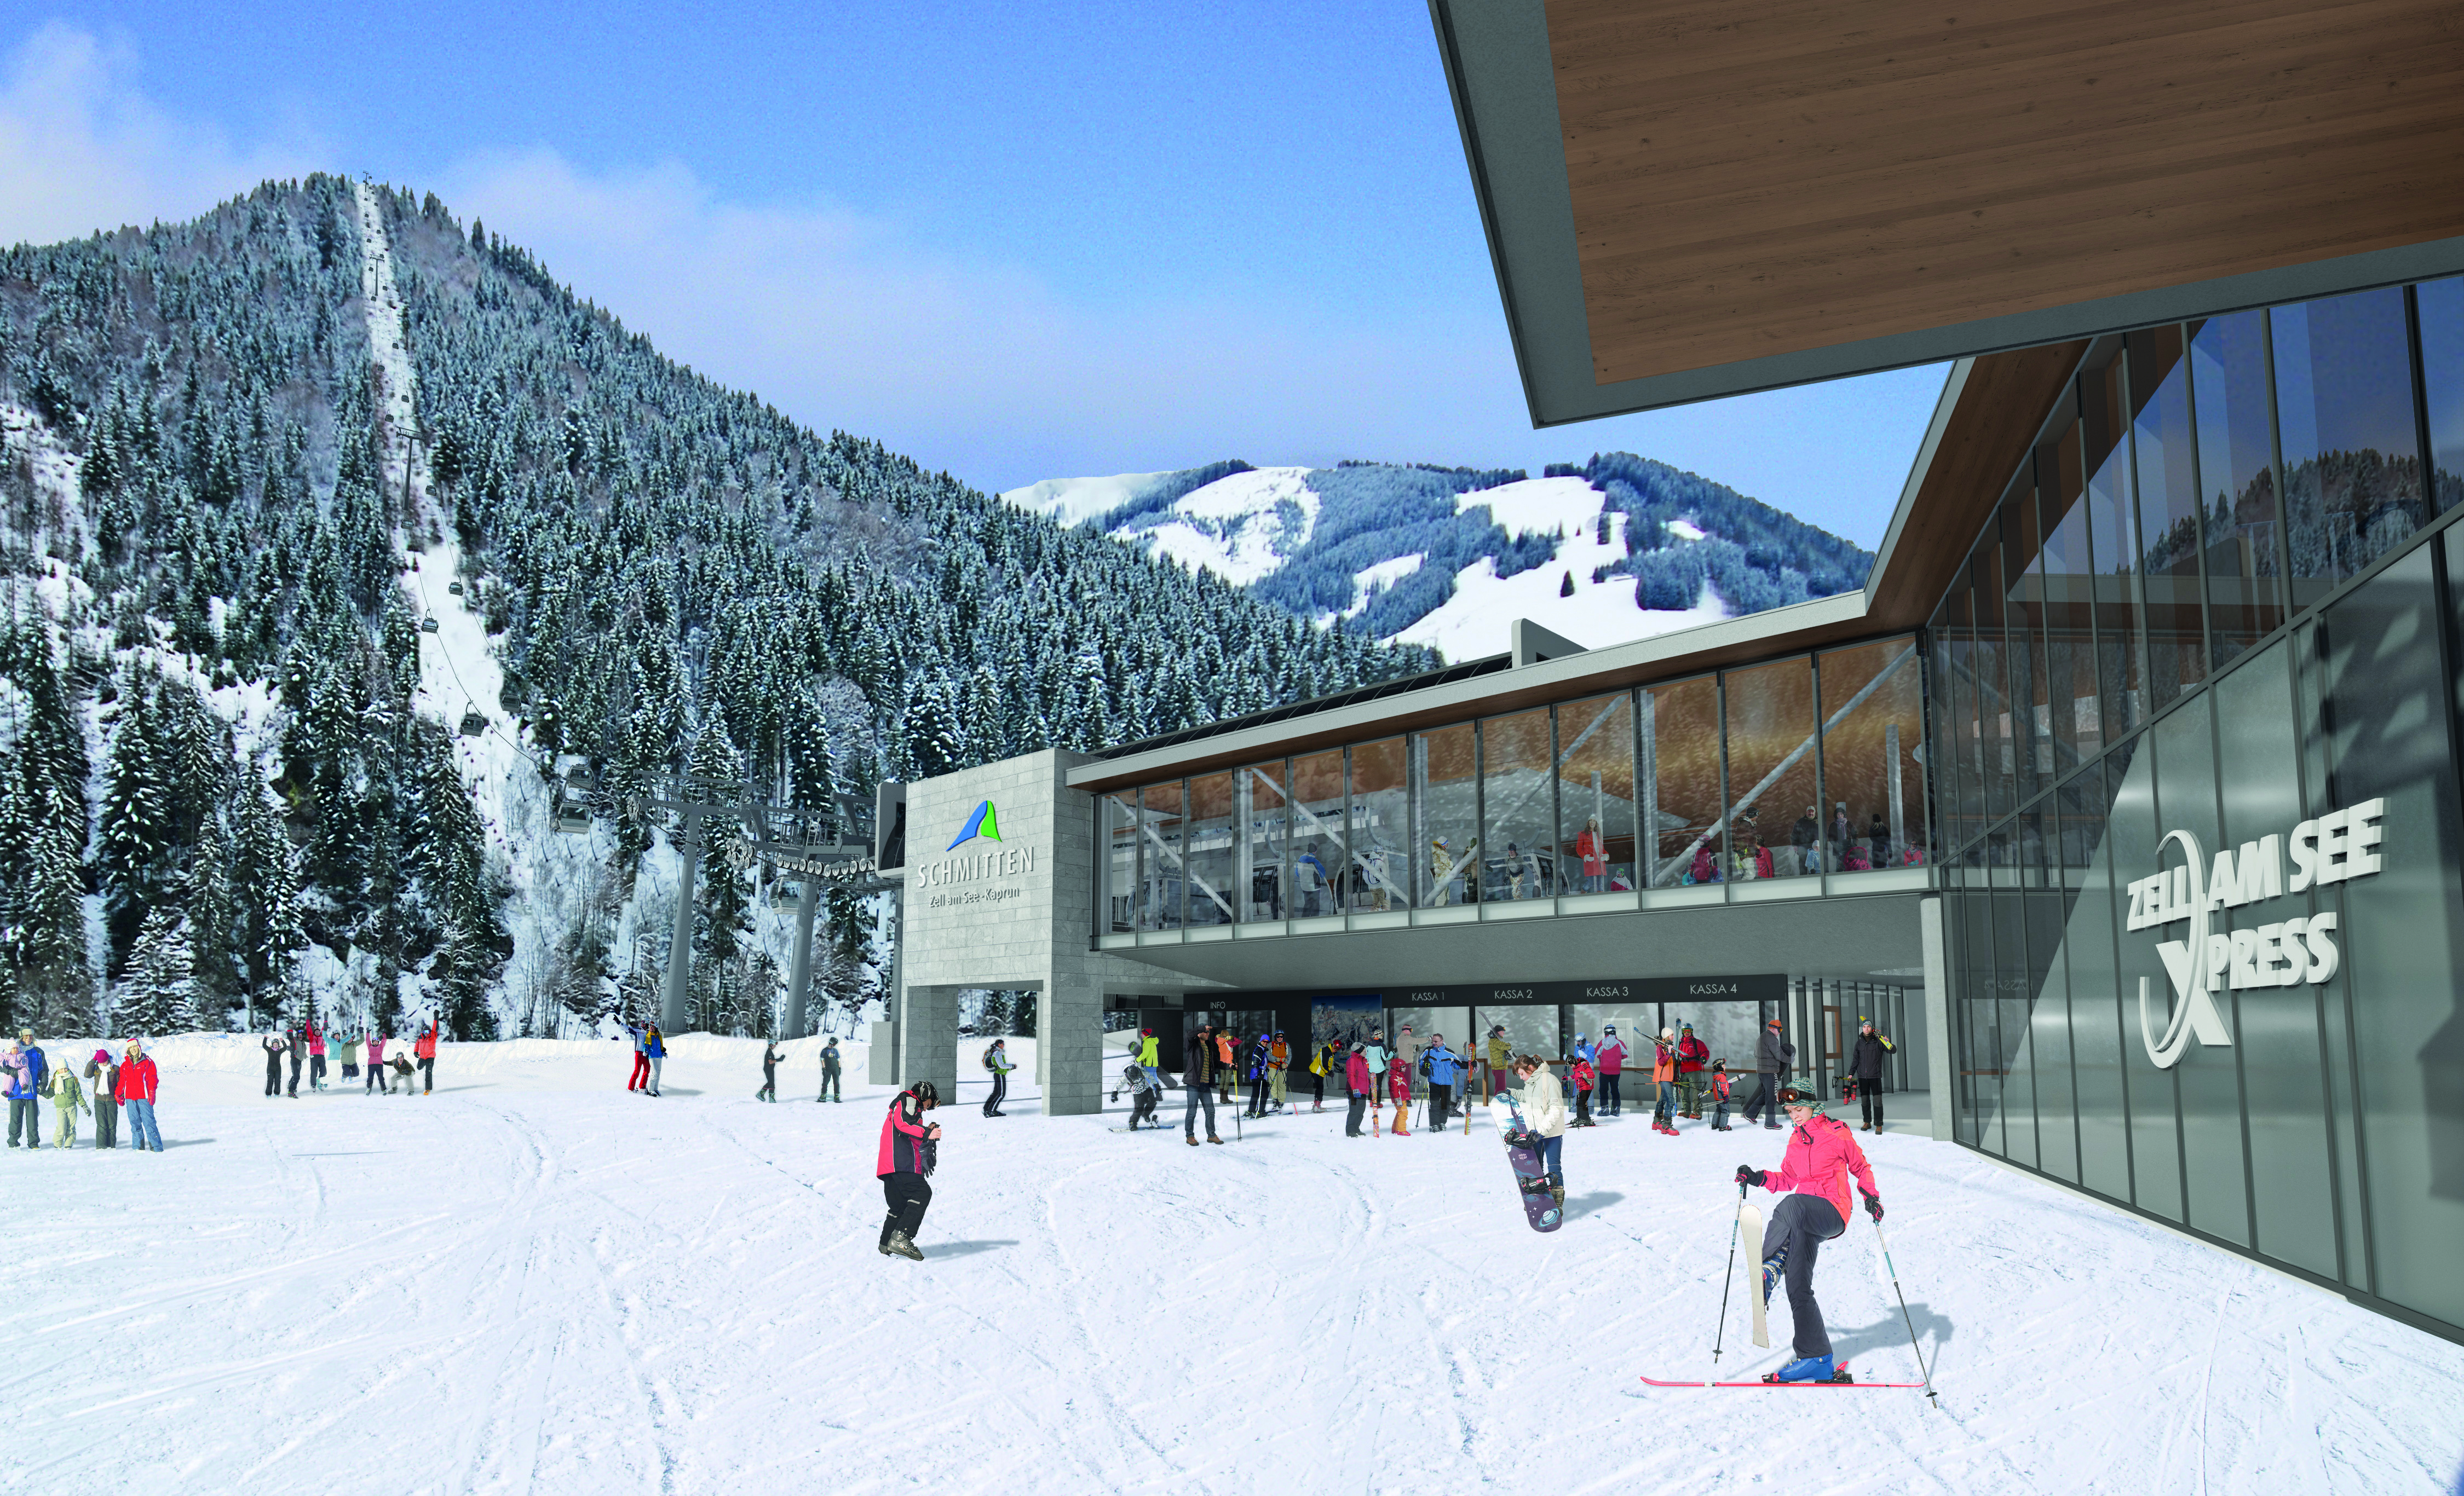 See ski. Капрун горнолыжный курорт. Станция Zell am see. Фюрт Капрун Австрия. Леоганг Австрия горнолыжный курорт.